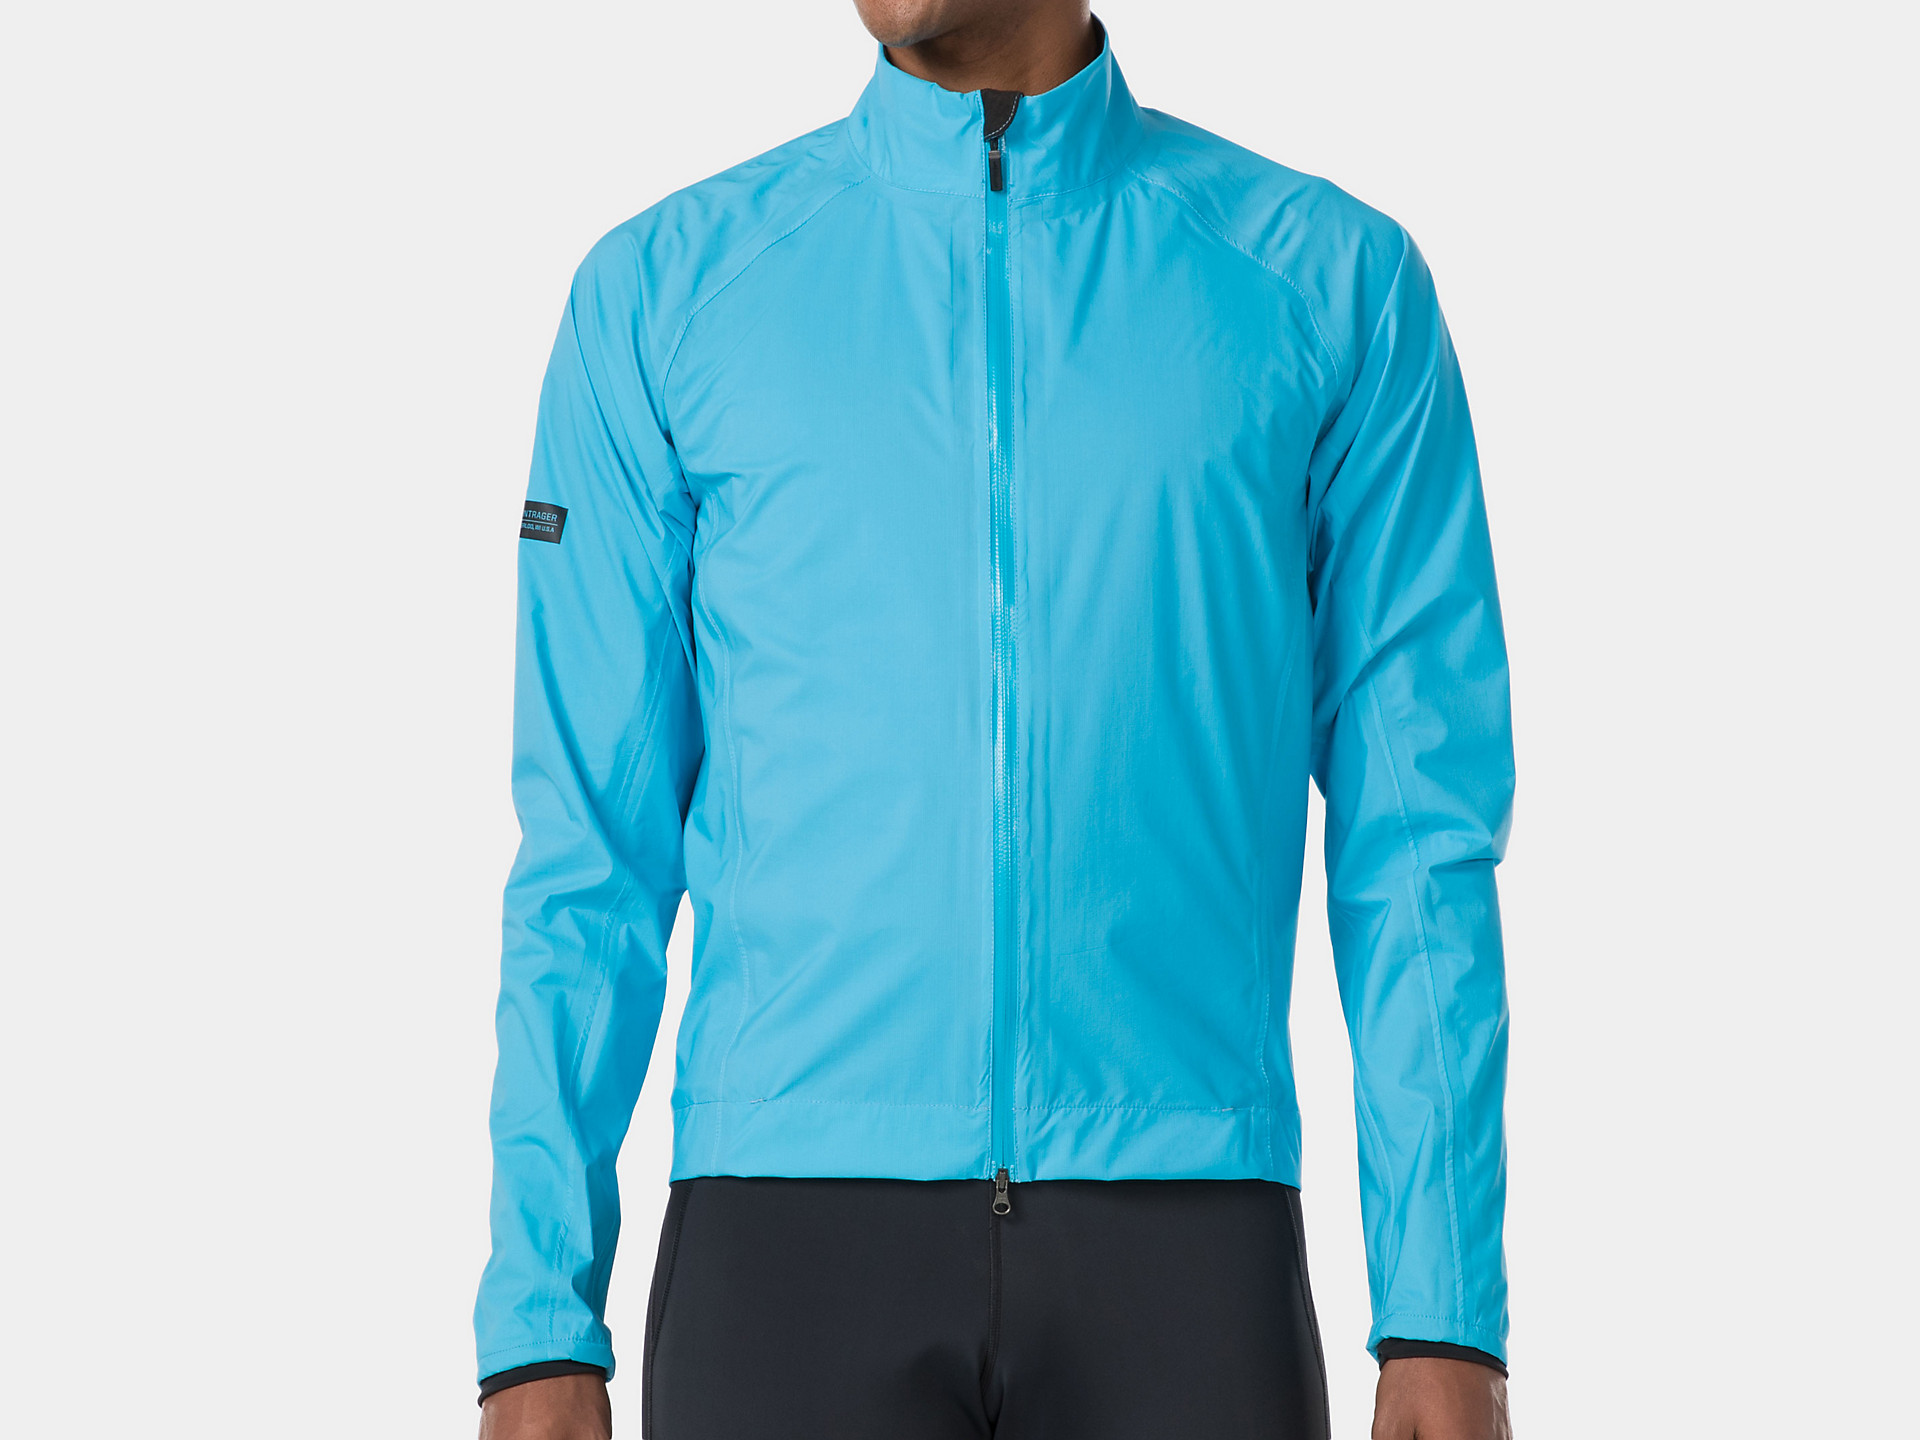 Details about   Men Women Cycling Jacket Waterproof Lightweight Biking Windbreaker MTB Bike Coat 